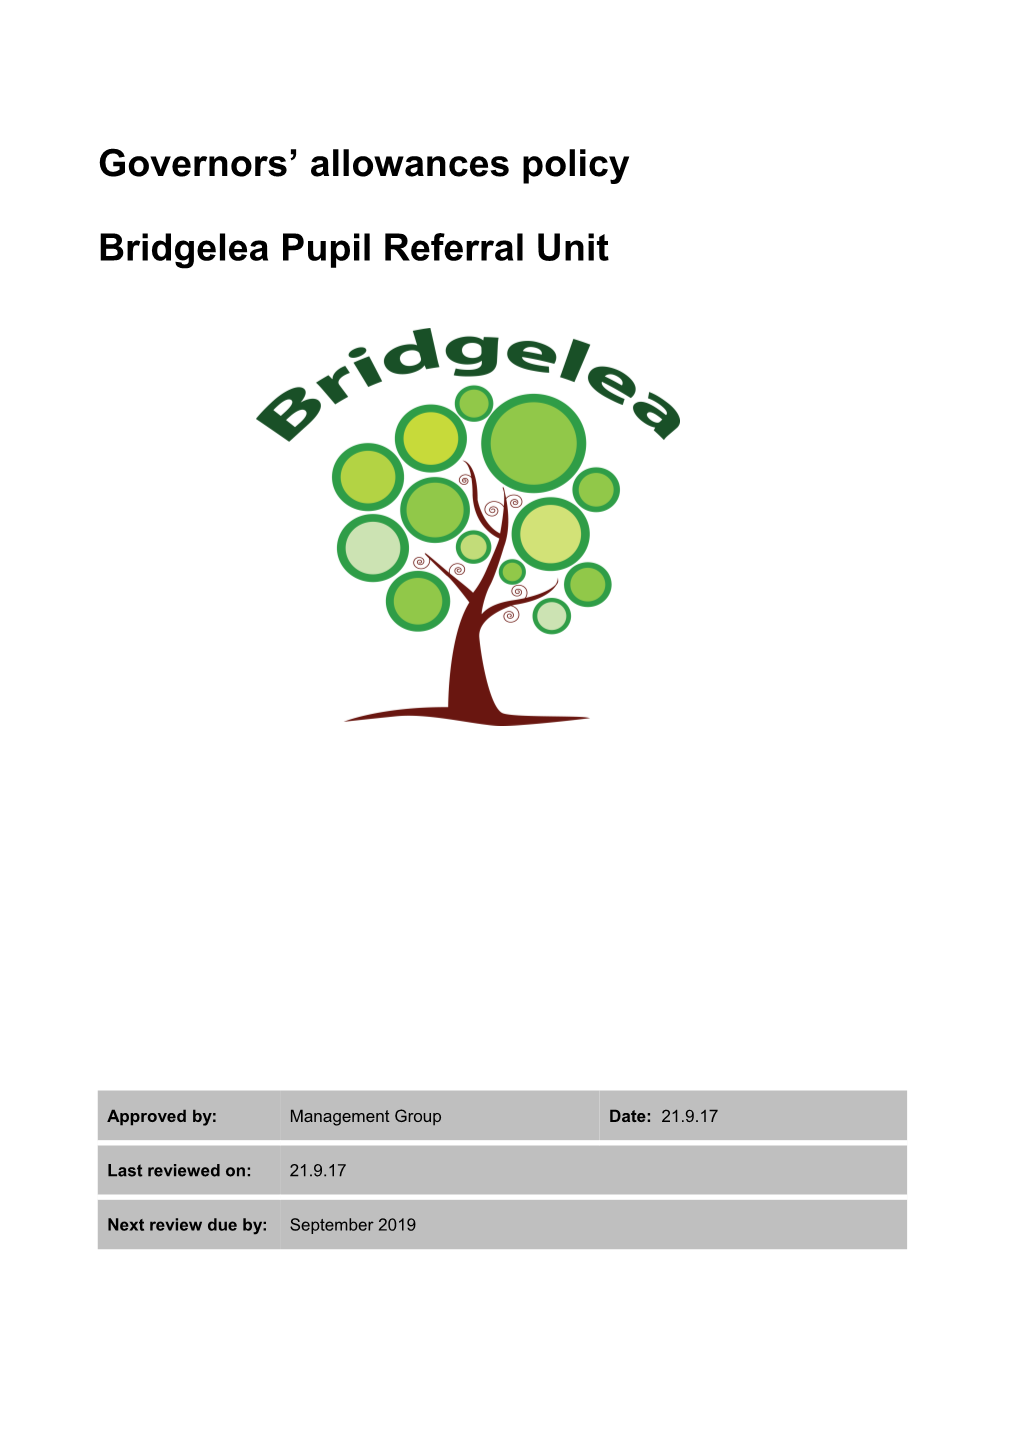 Bridgelea Pupil Referral Unit